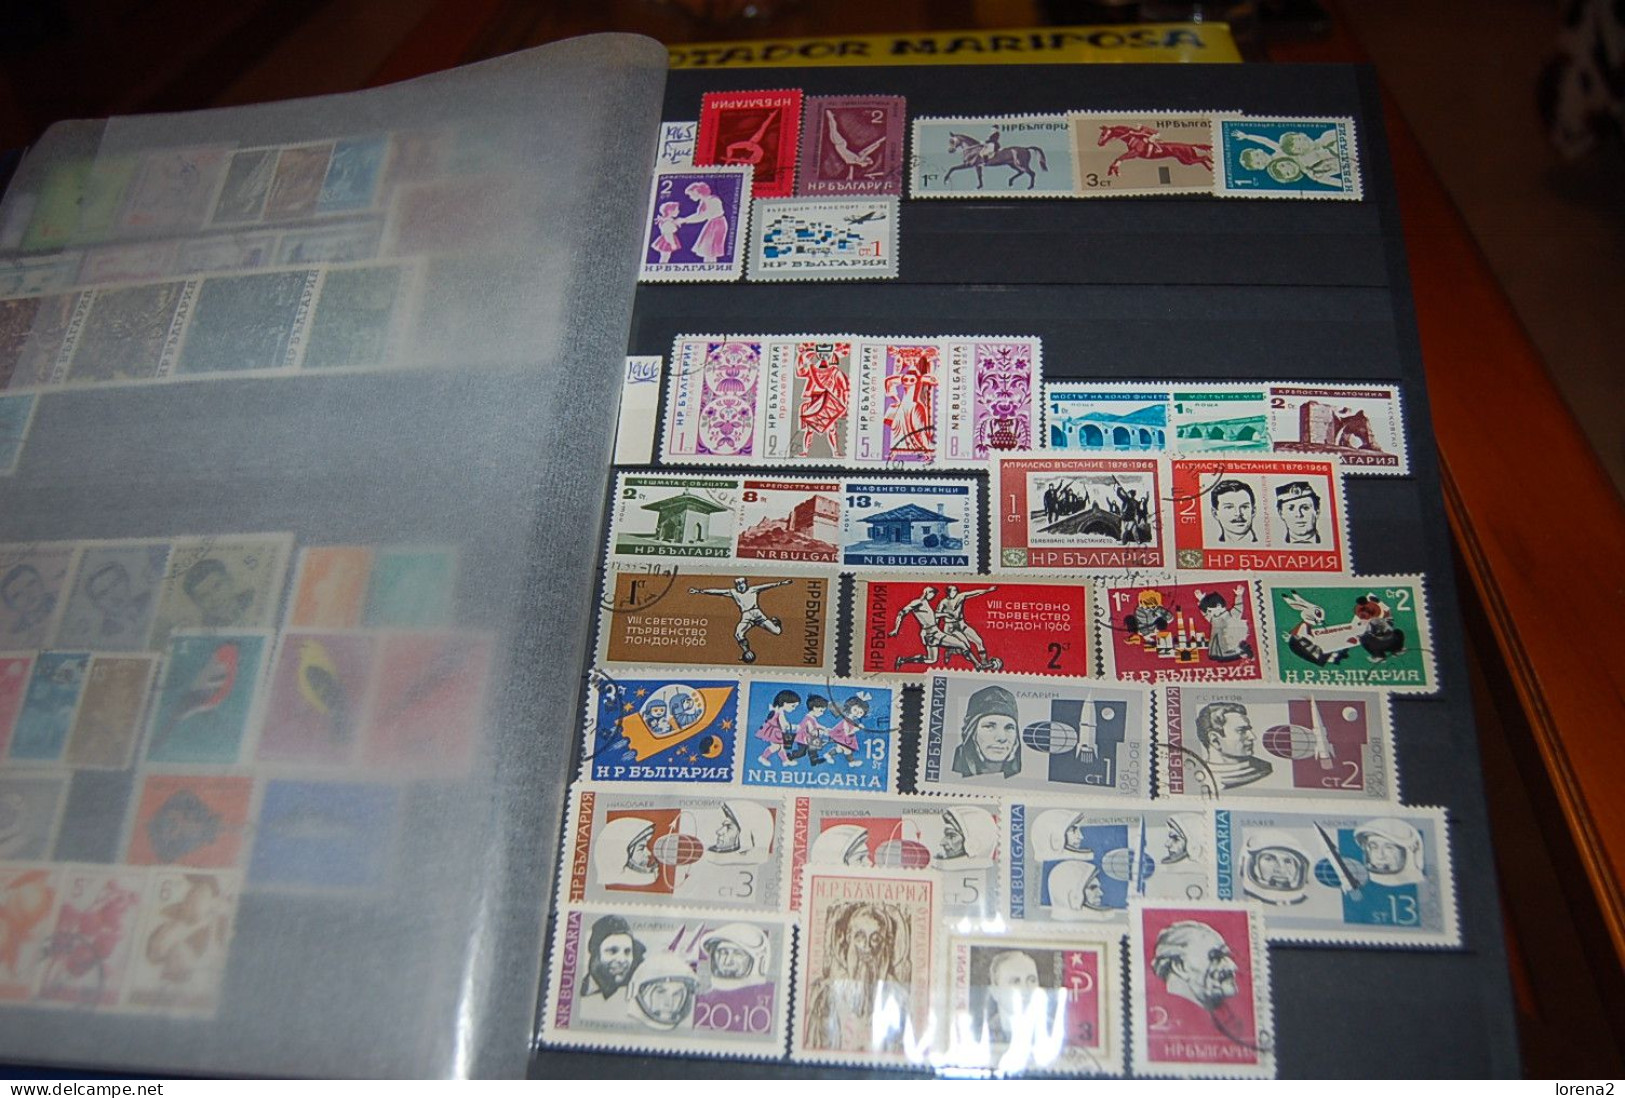 Colección Sellos usados Bulgaria. de 1882 al 2000. 1189 sellos. colec-38